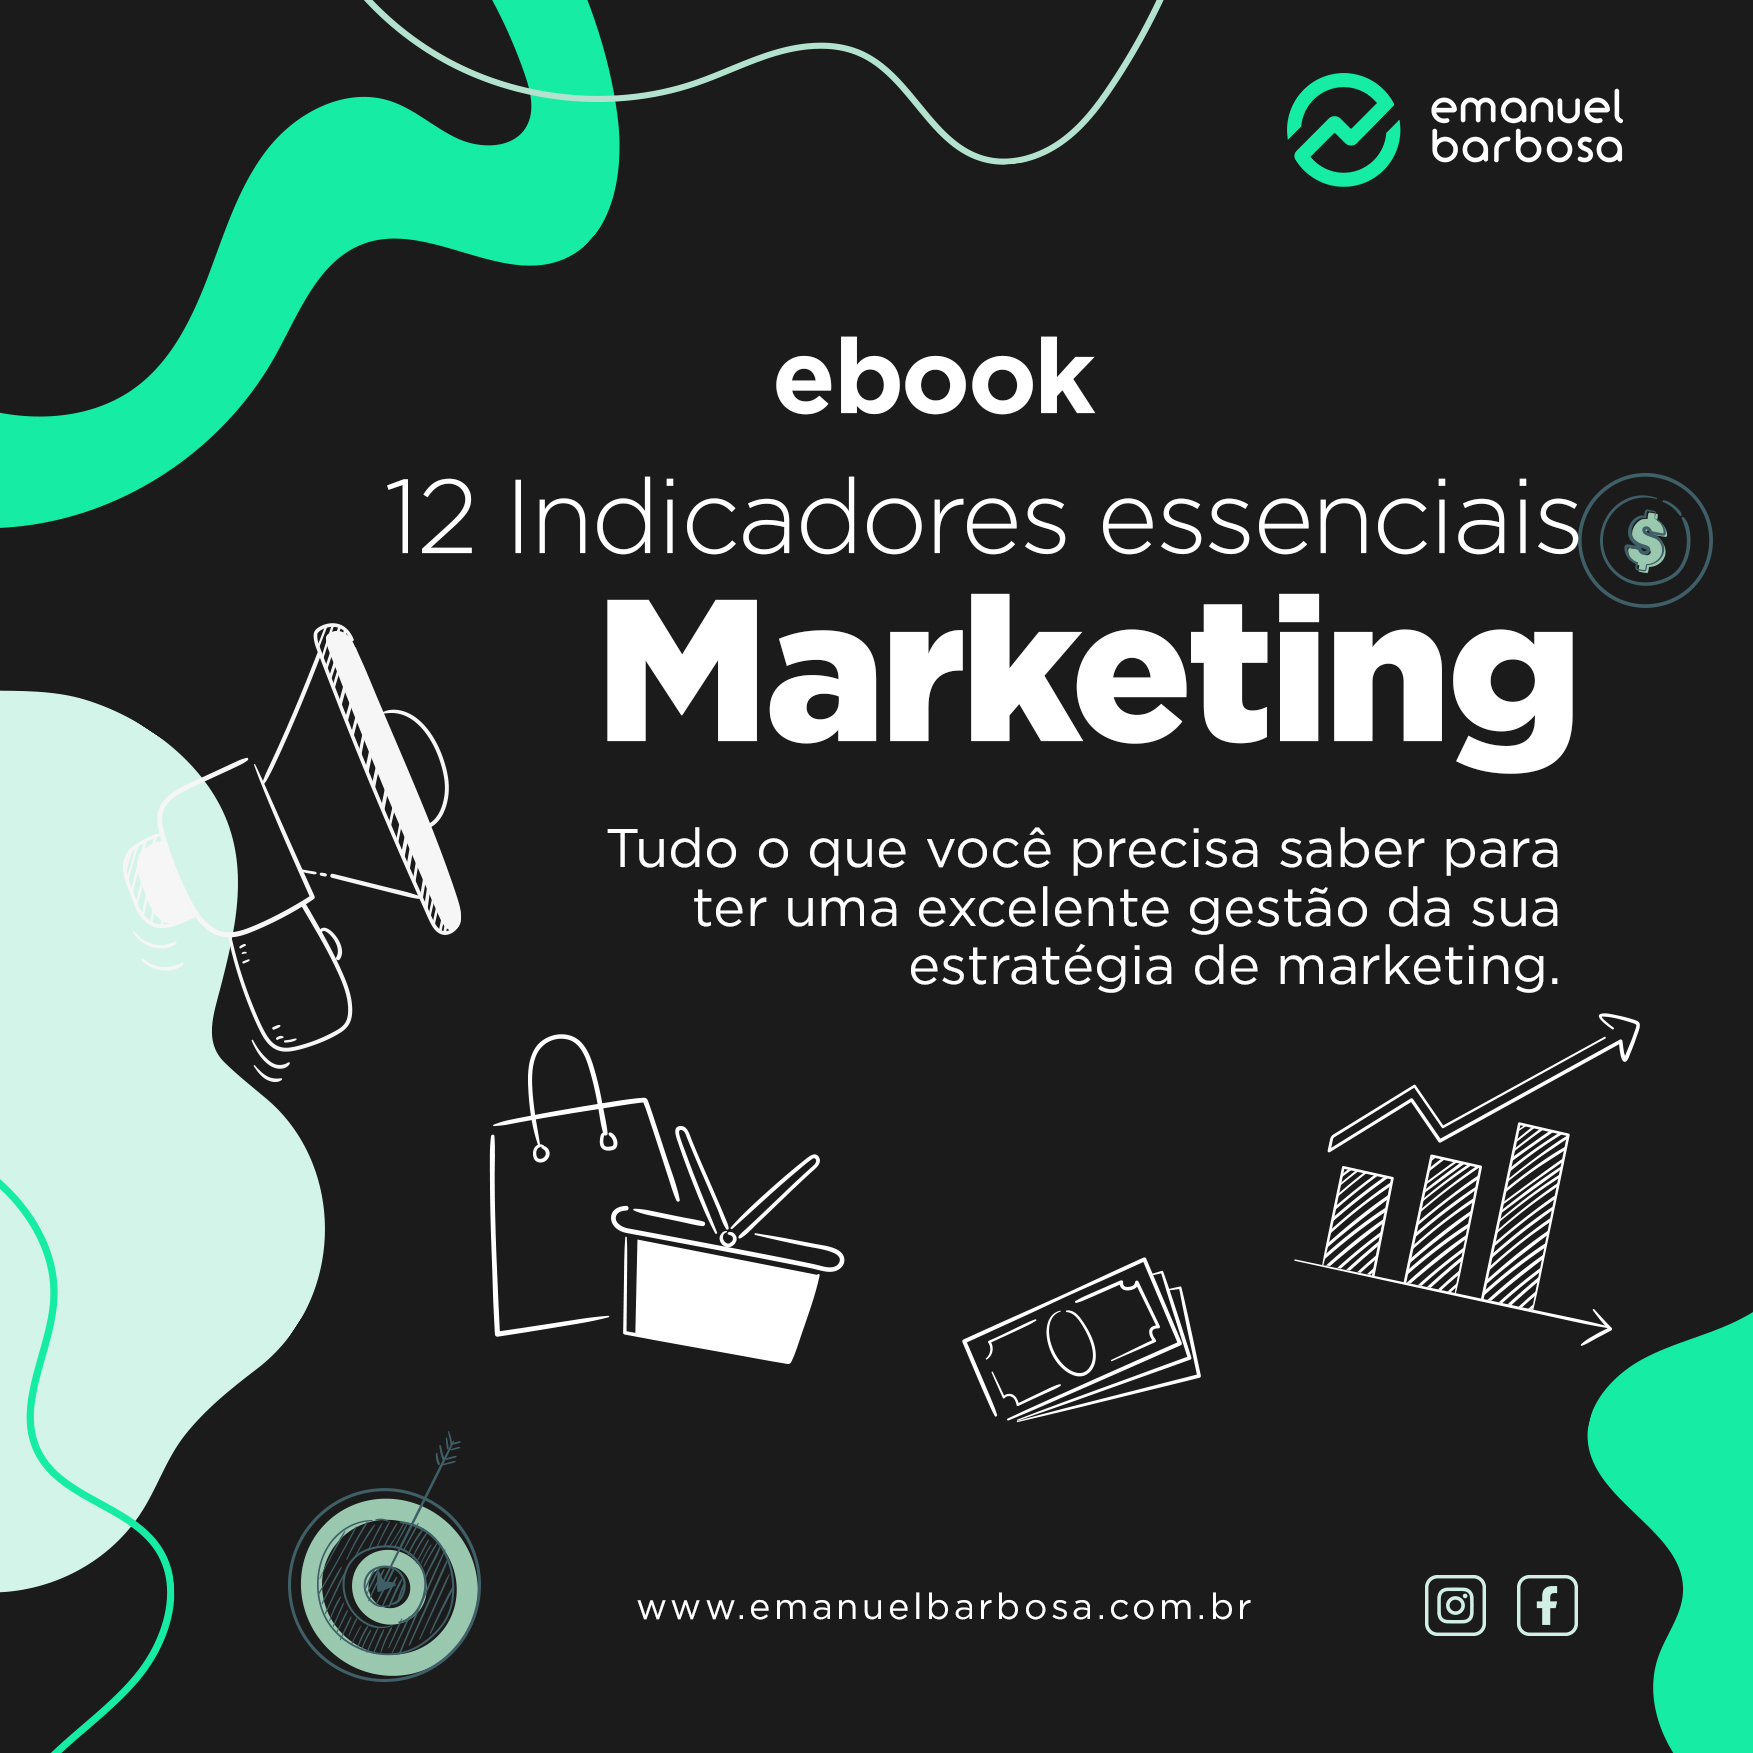 ebook-12-indicdores-de-marketing-essenciais-para-qualquer-negocio